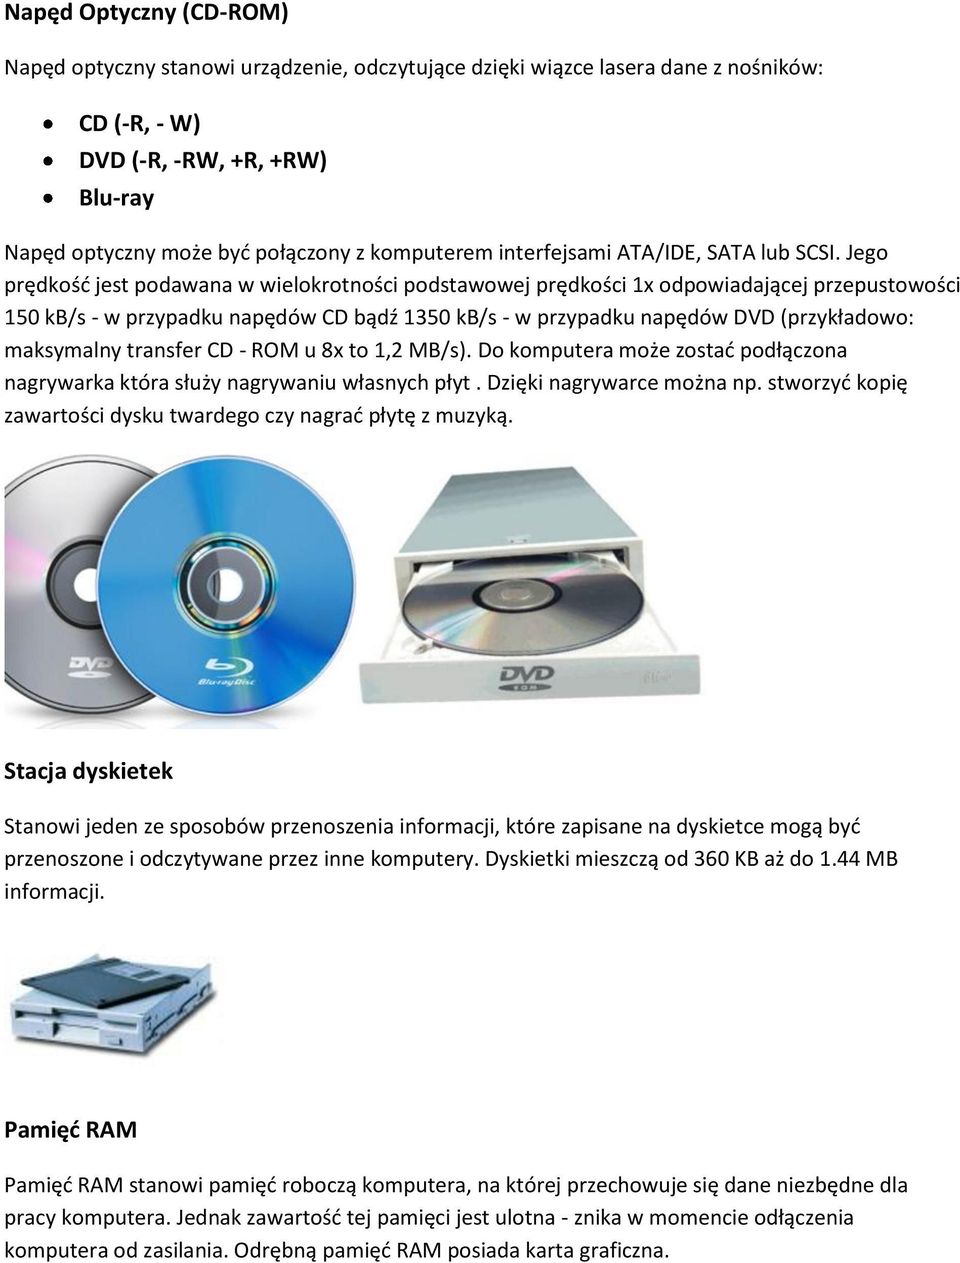 Jego prędkośd jest podawana w wielokrotności podstawowej prędkości 1x odpowiadającej przepustowości 150 kb/s - w przypadku napędów CD bądź 1350 kb/s - w przypadku napędów DVD (przykładowo: maksymalny